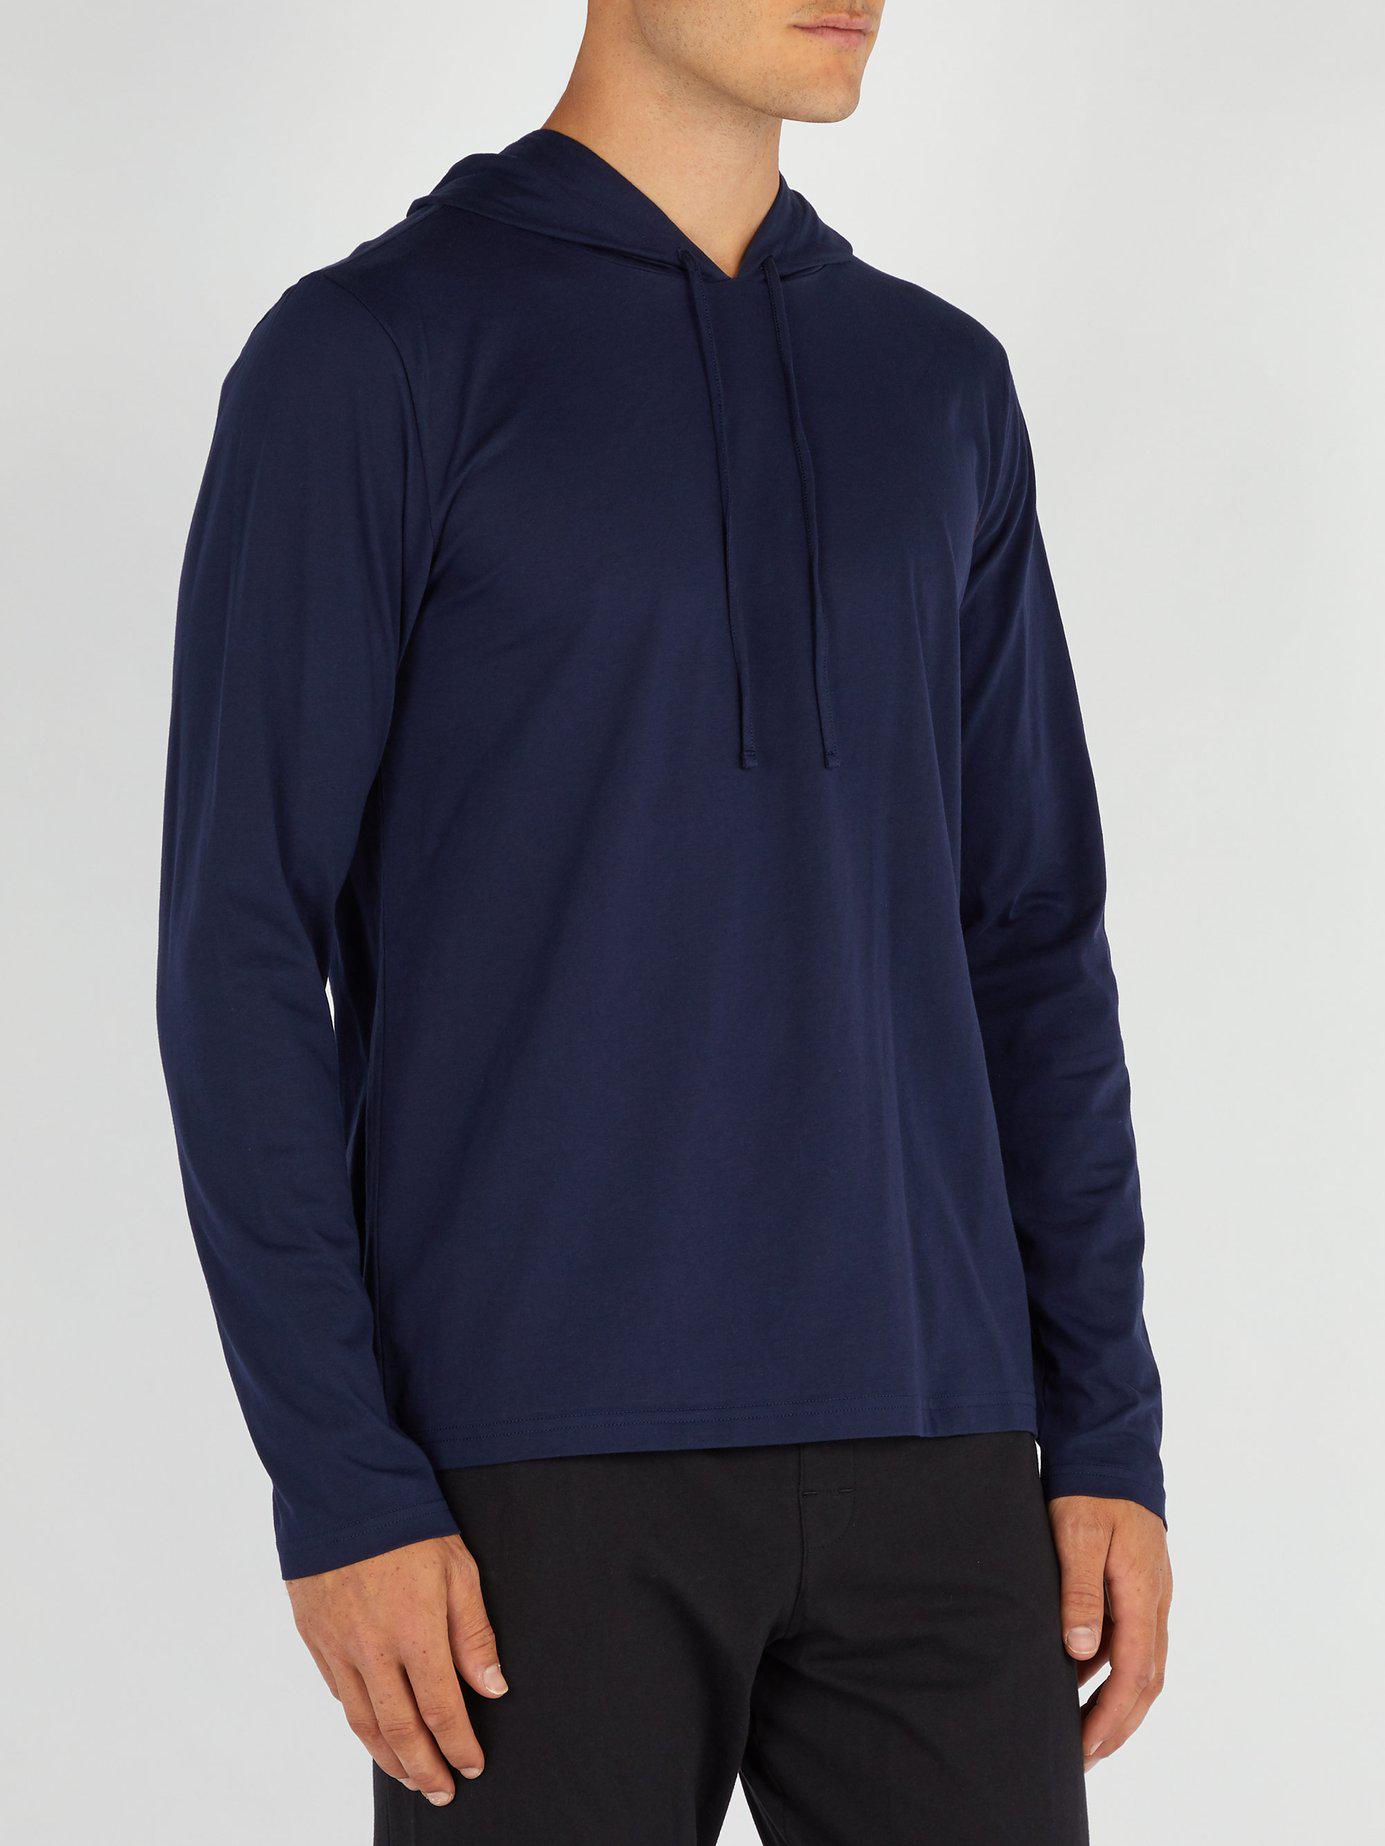 Polo Ralph Lauren Hooded Cotton Pyjama Top in Navy (Blue) for Men - Lyst